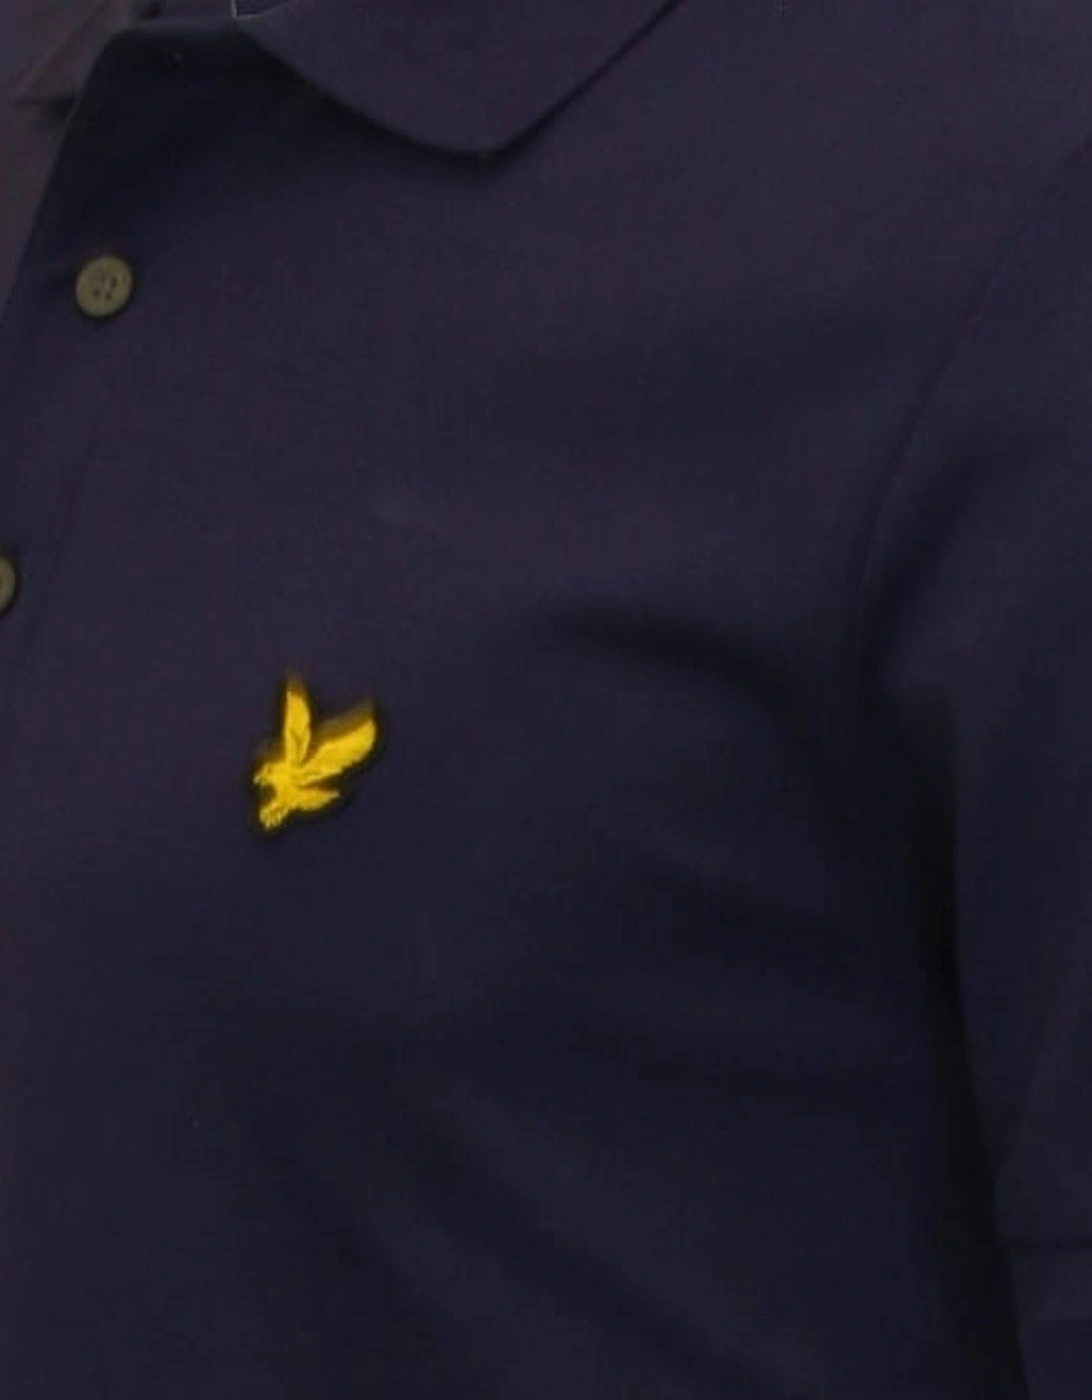 Classic Pique Polo Shirt, Navy